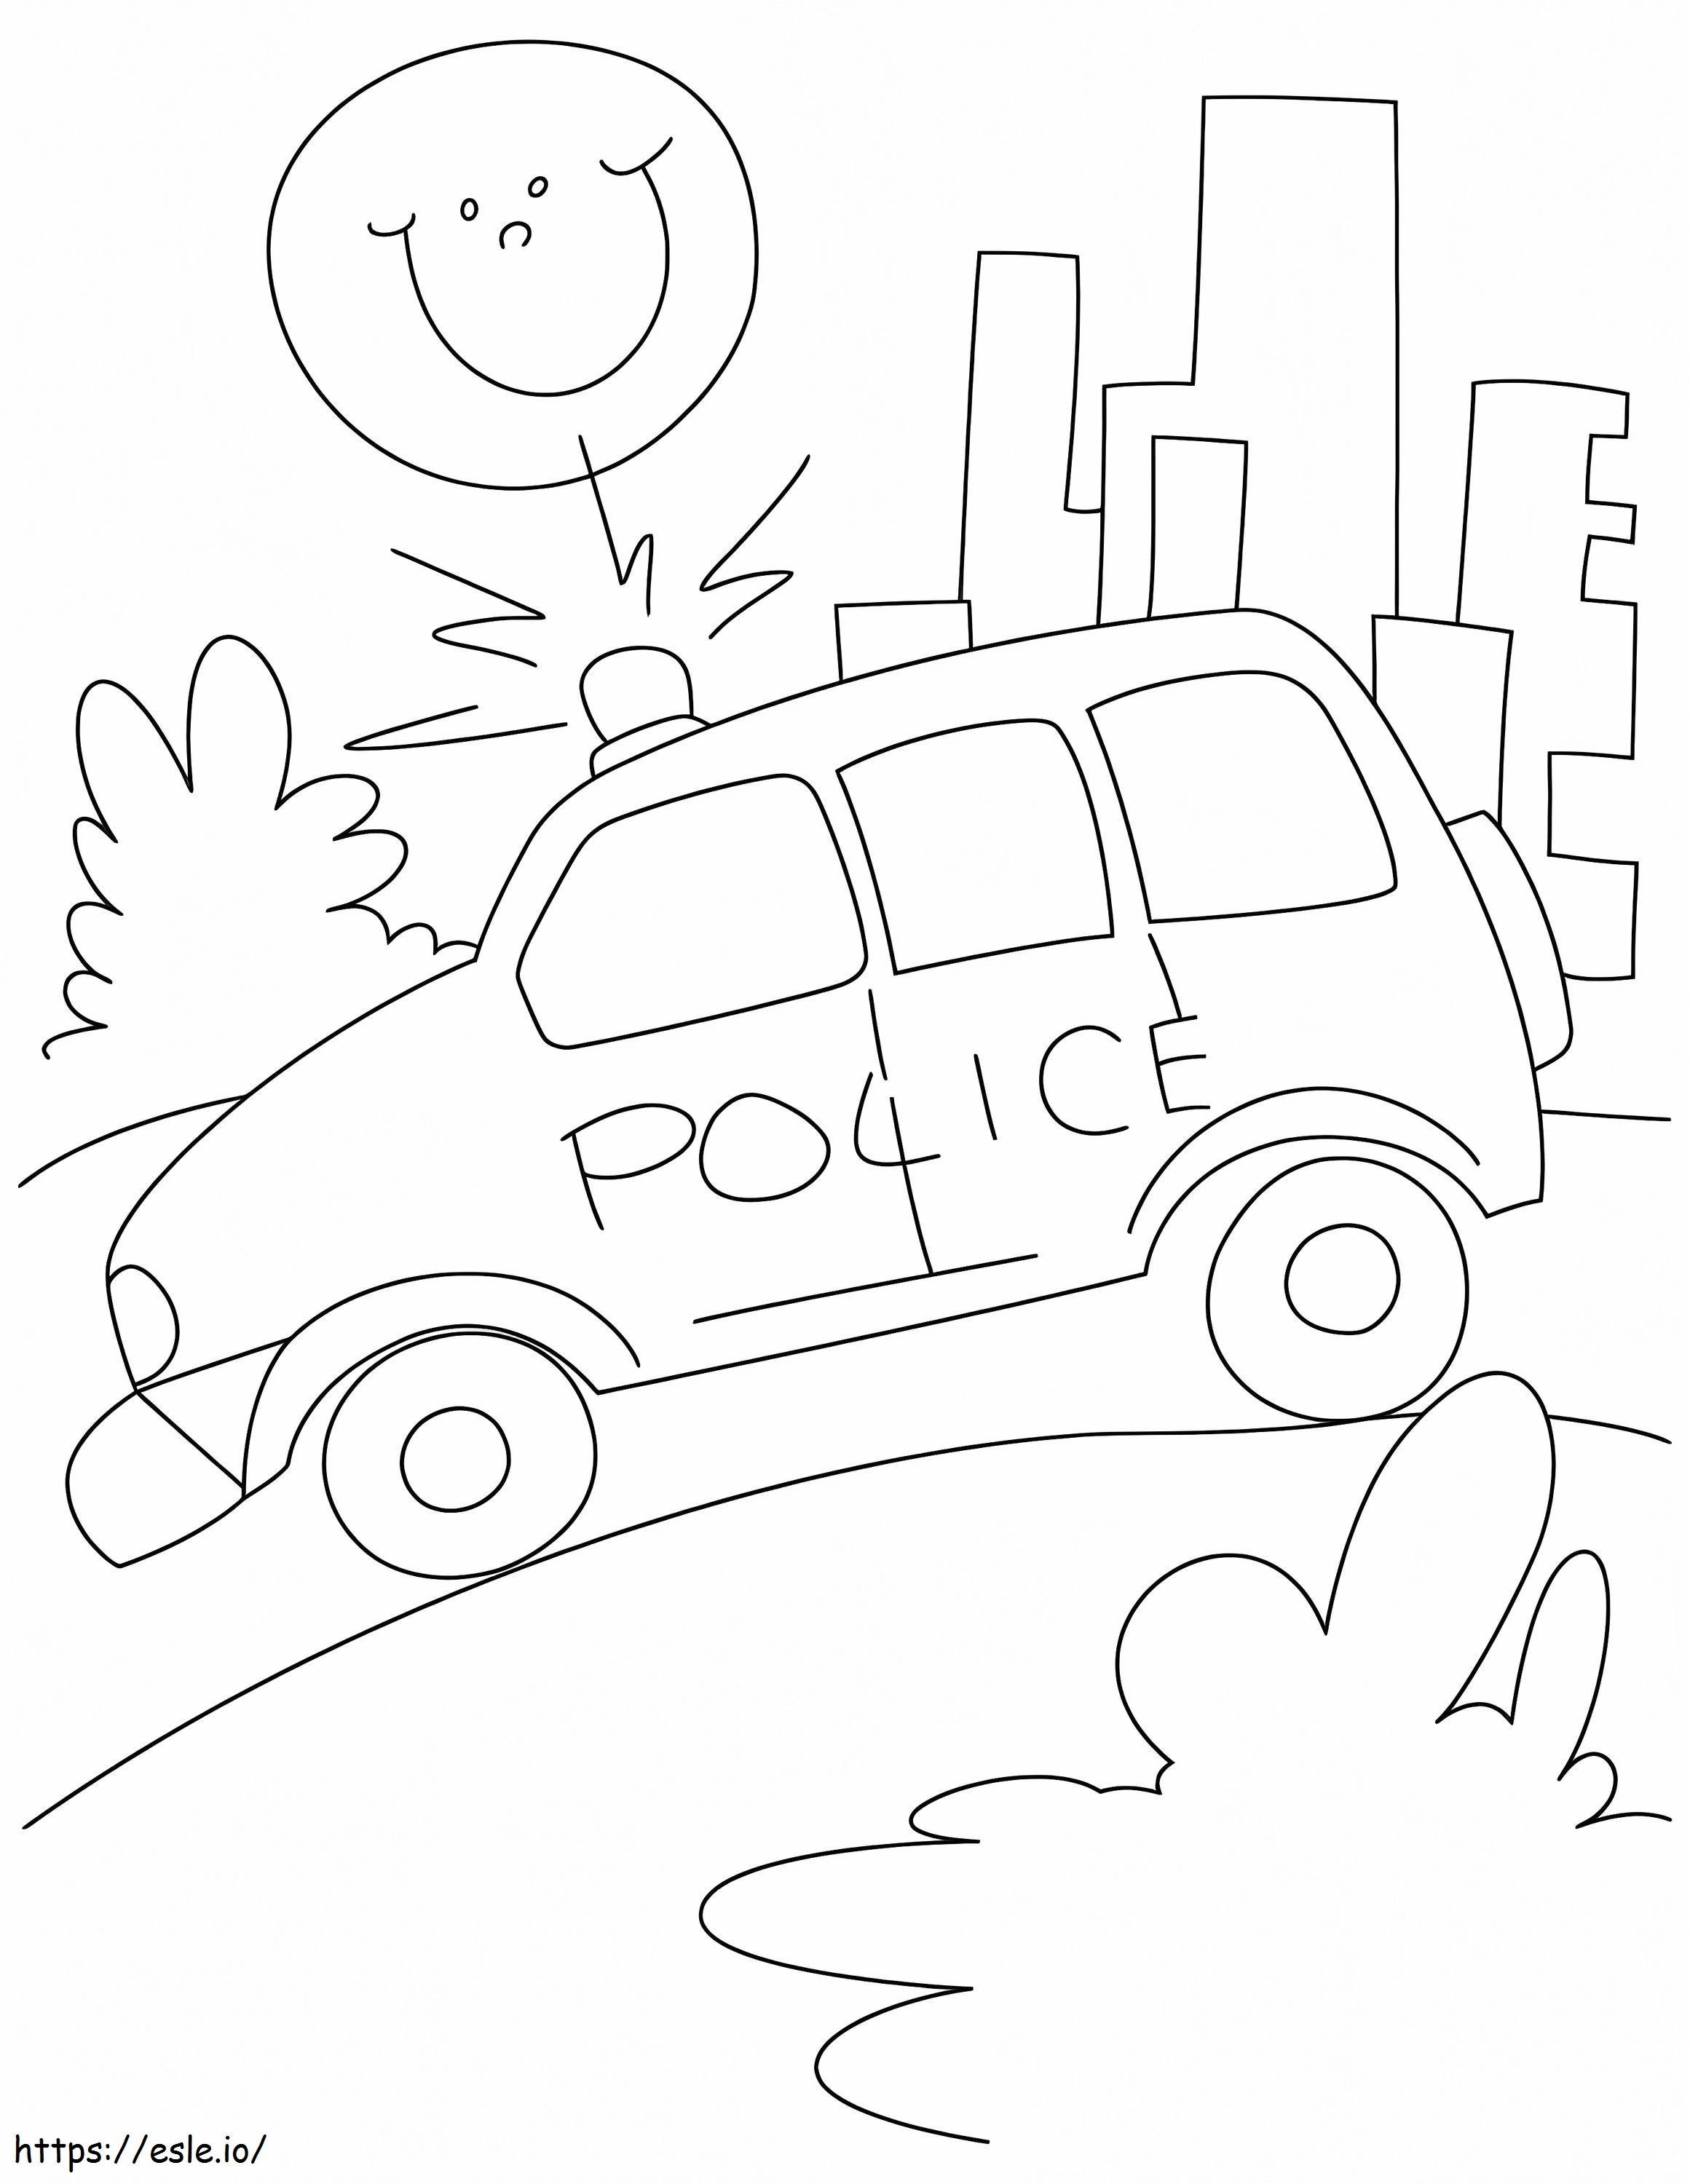 Polizei-Benzinauto auf der Autobahn ausmalbilder